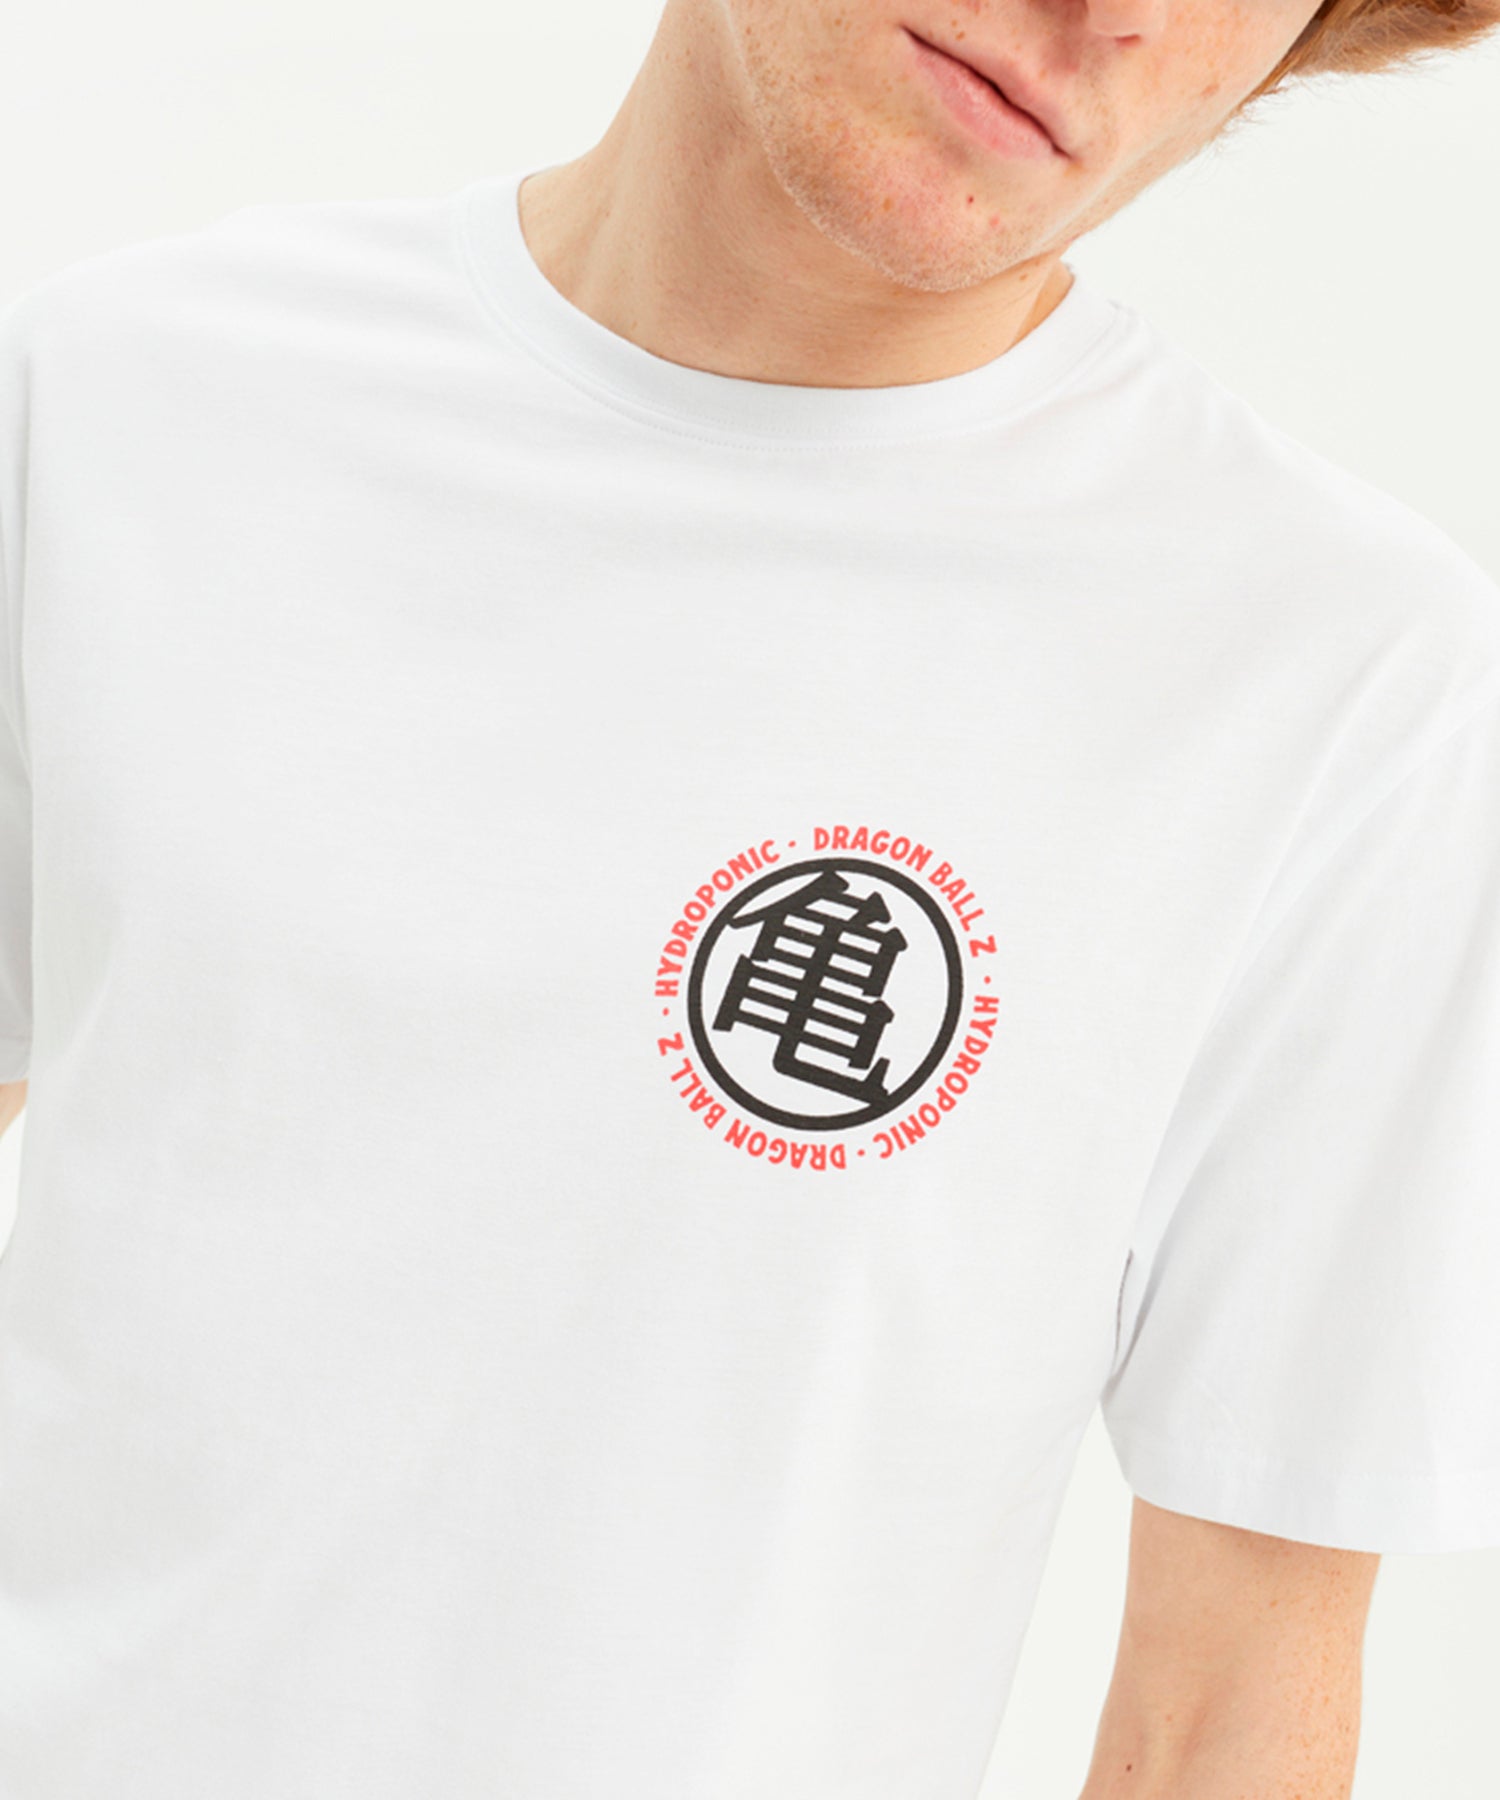 hydroponic-camiseta-dragon-ball-z-roshi-estampado-en-el-bolsillo-y-en-la-espalda-color-blanco-algodón-160grms